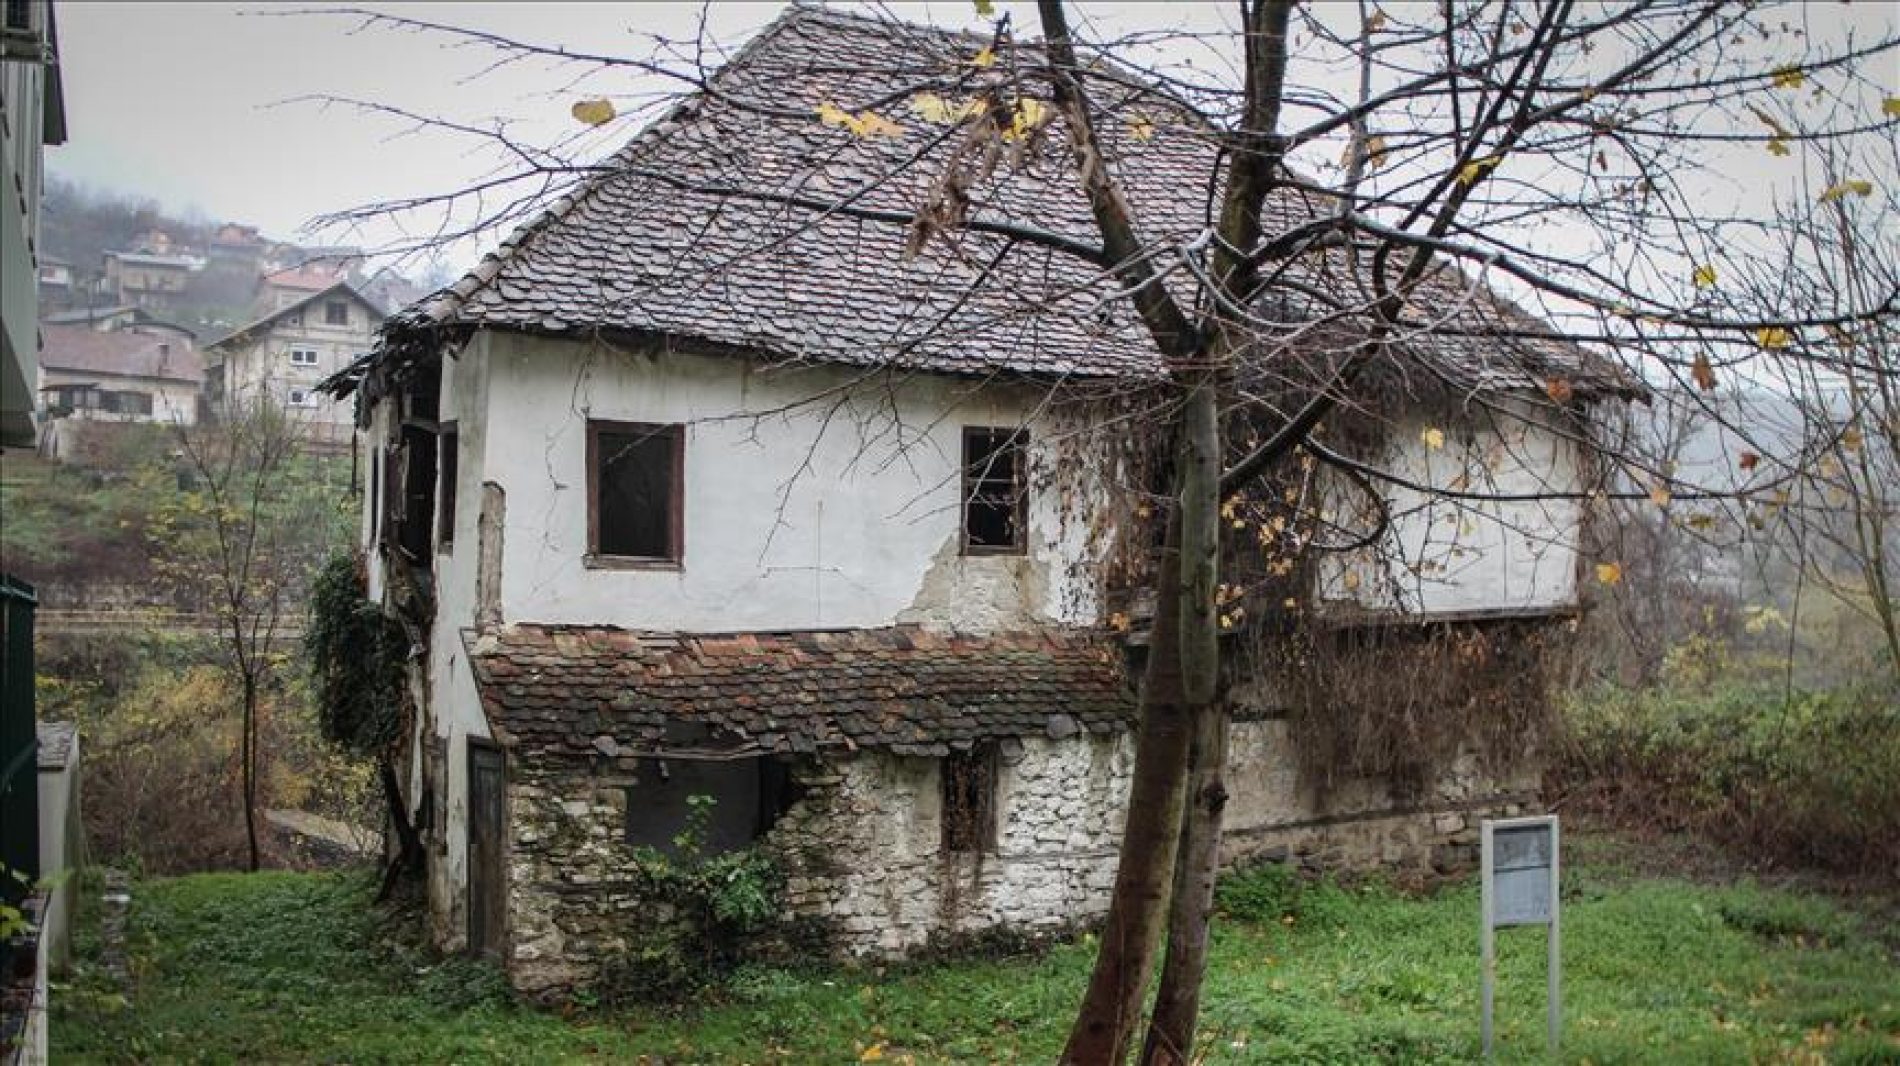 Nacionalni spomenik: Najstarija kuća porodičnog življenja u Banjaluci – “Šeranića kuća” čeka obnovu